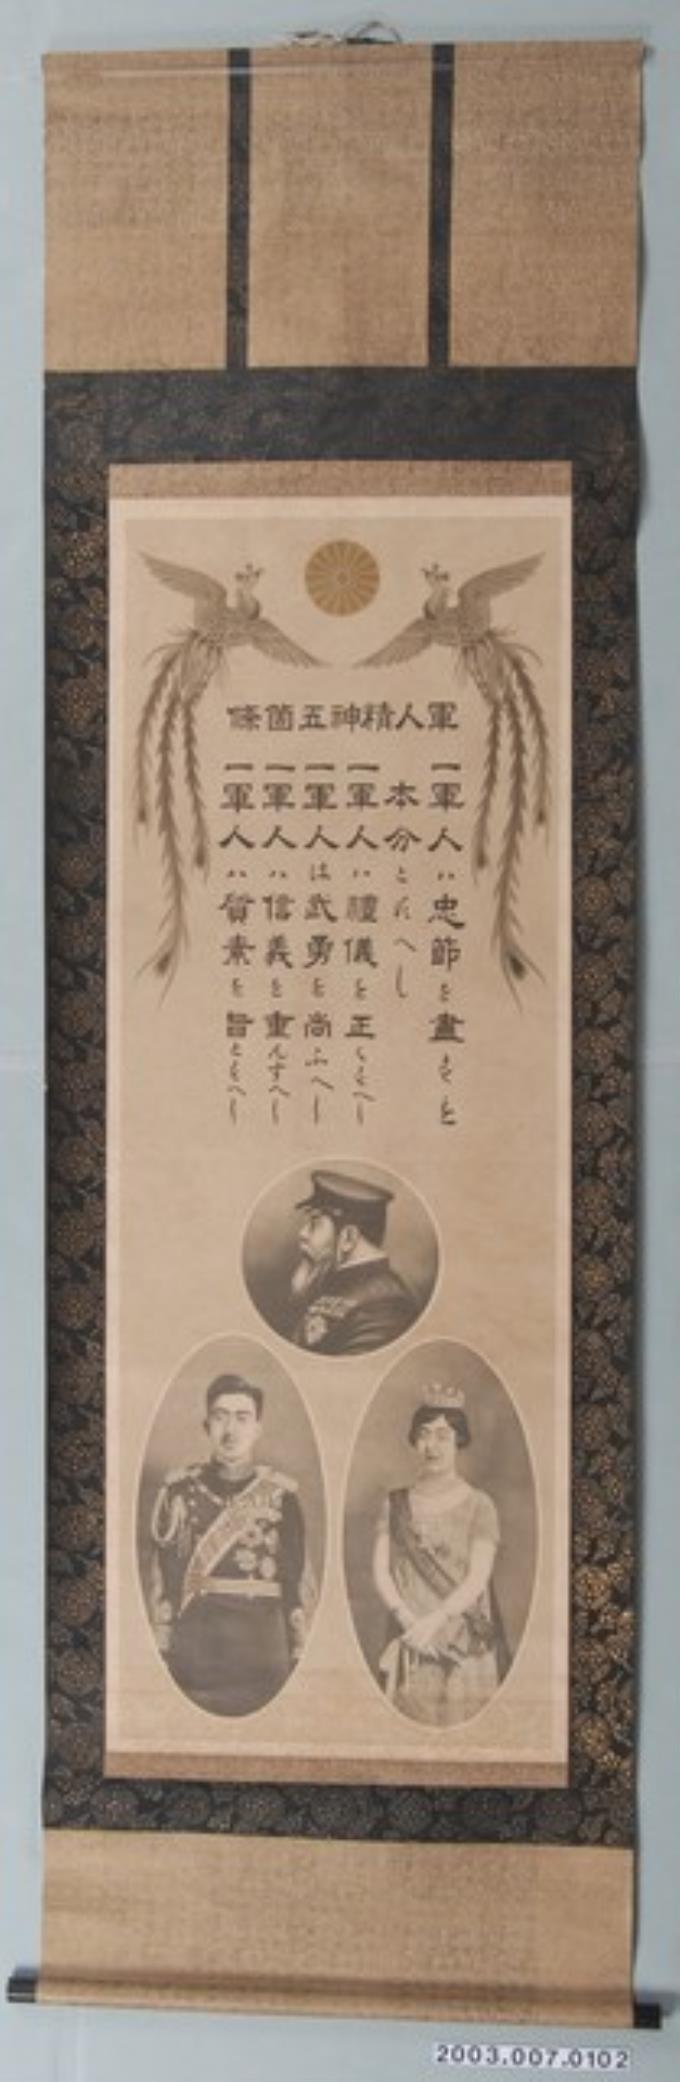 昭和時期軍人精神五箇條掛軸 (共2張)